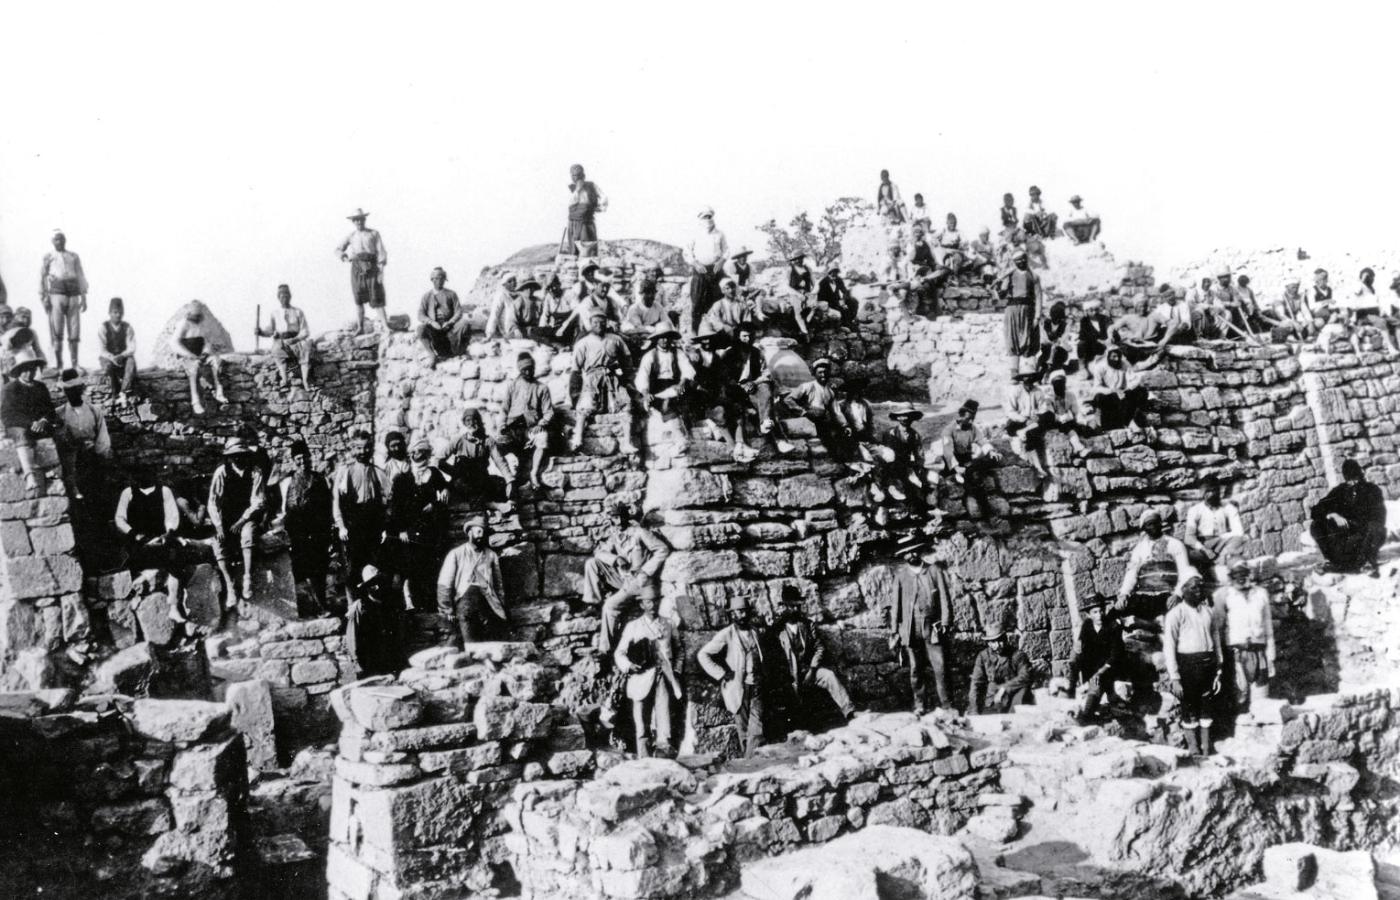 Wykopaliska prowadzone przez Heinricha Schliemanna na wzgórzu Hisarlik w Turcji, gdzie szukał pozostałości Troi, zdjęcie niedatowane.